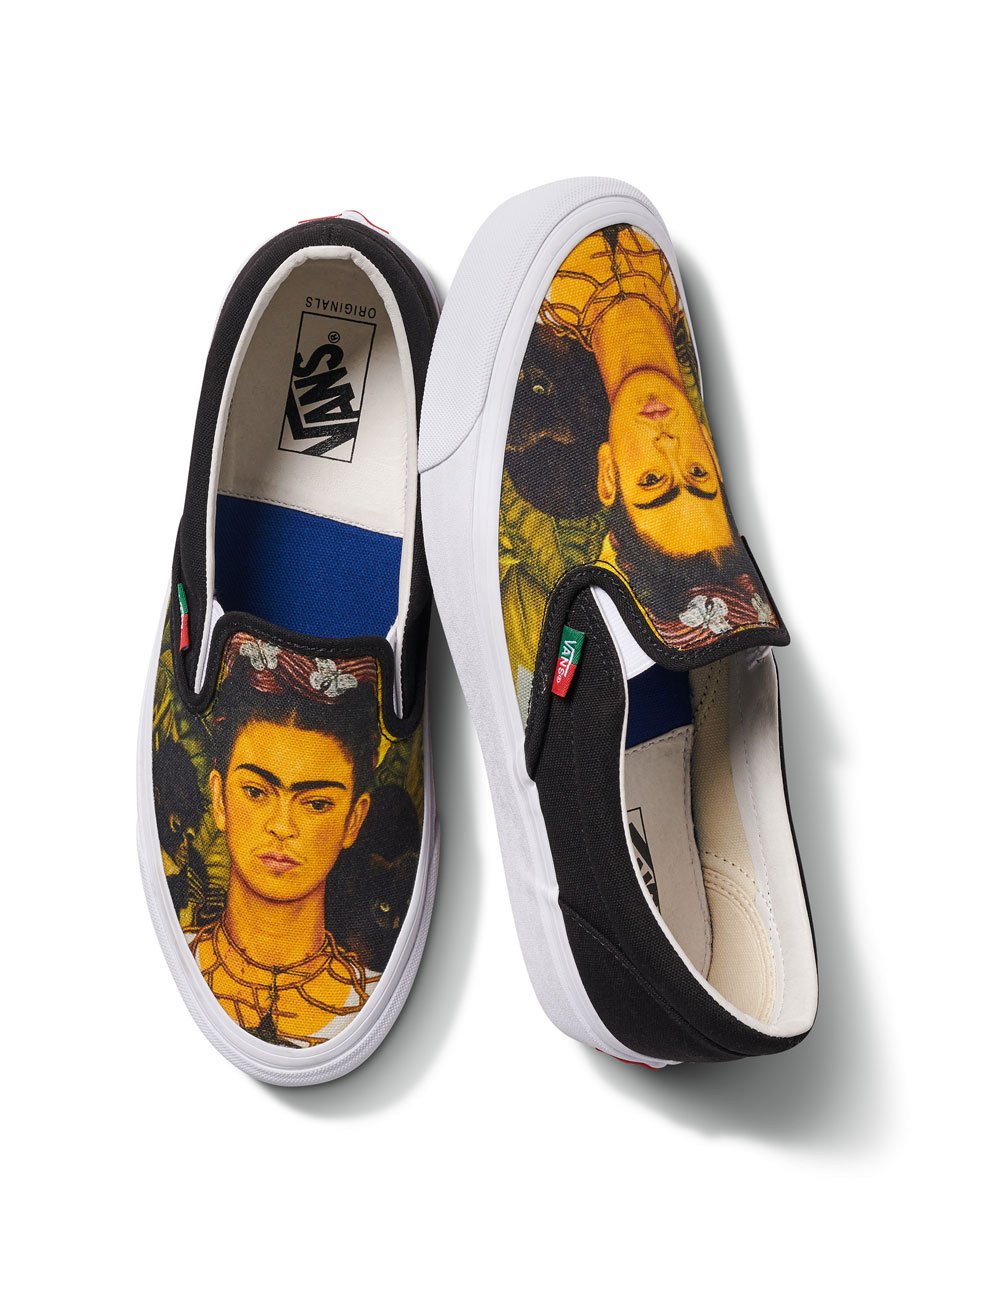 Vans Frida Kahlo